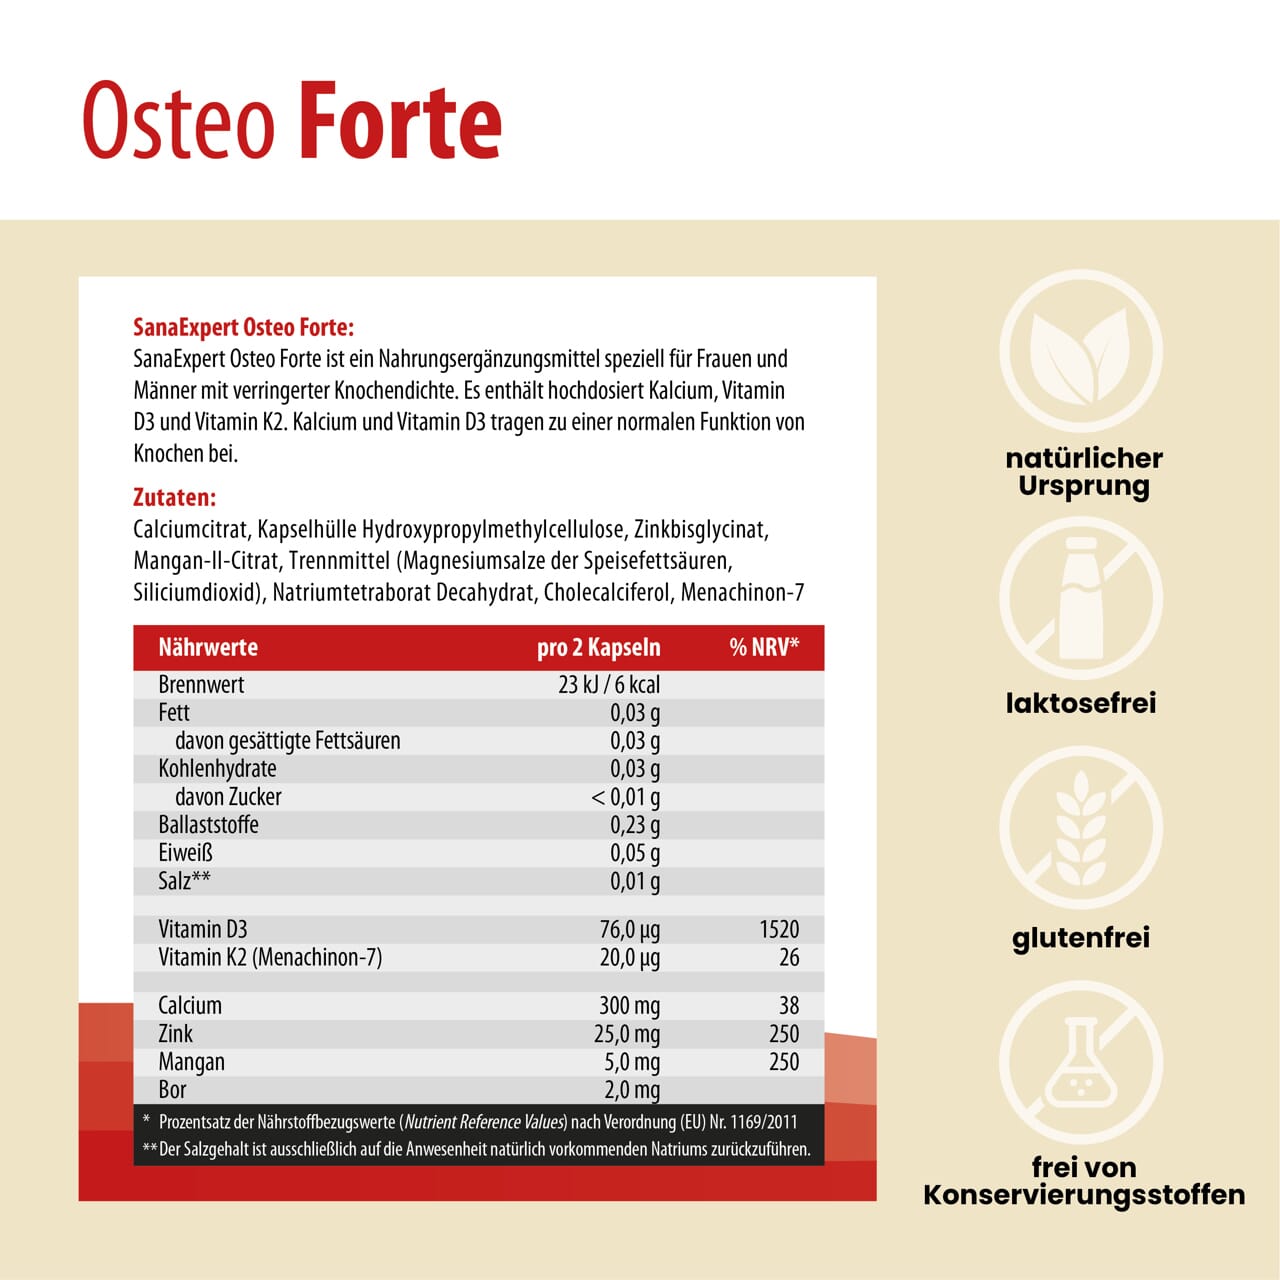 Detaillierte Ansicht der Nährstoffinformationen und Vorteile von SanaExpert Osteo Forte, die die Förderung der Knochengesundheit betonen, mit Schwerpunkt auf natürlichem Ursprung und Freiheit von Laktose und Gluten.